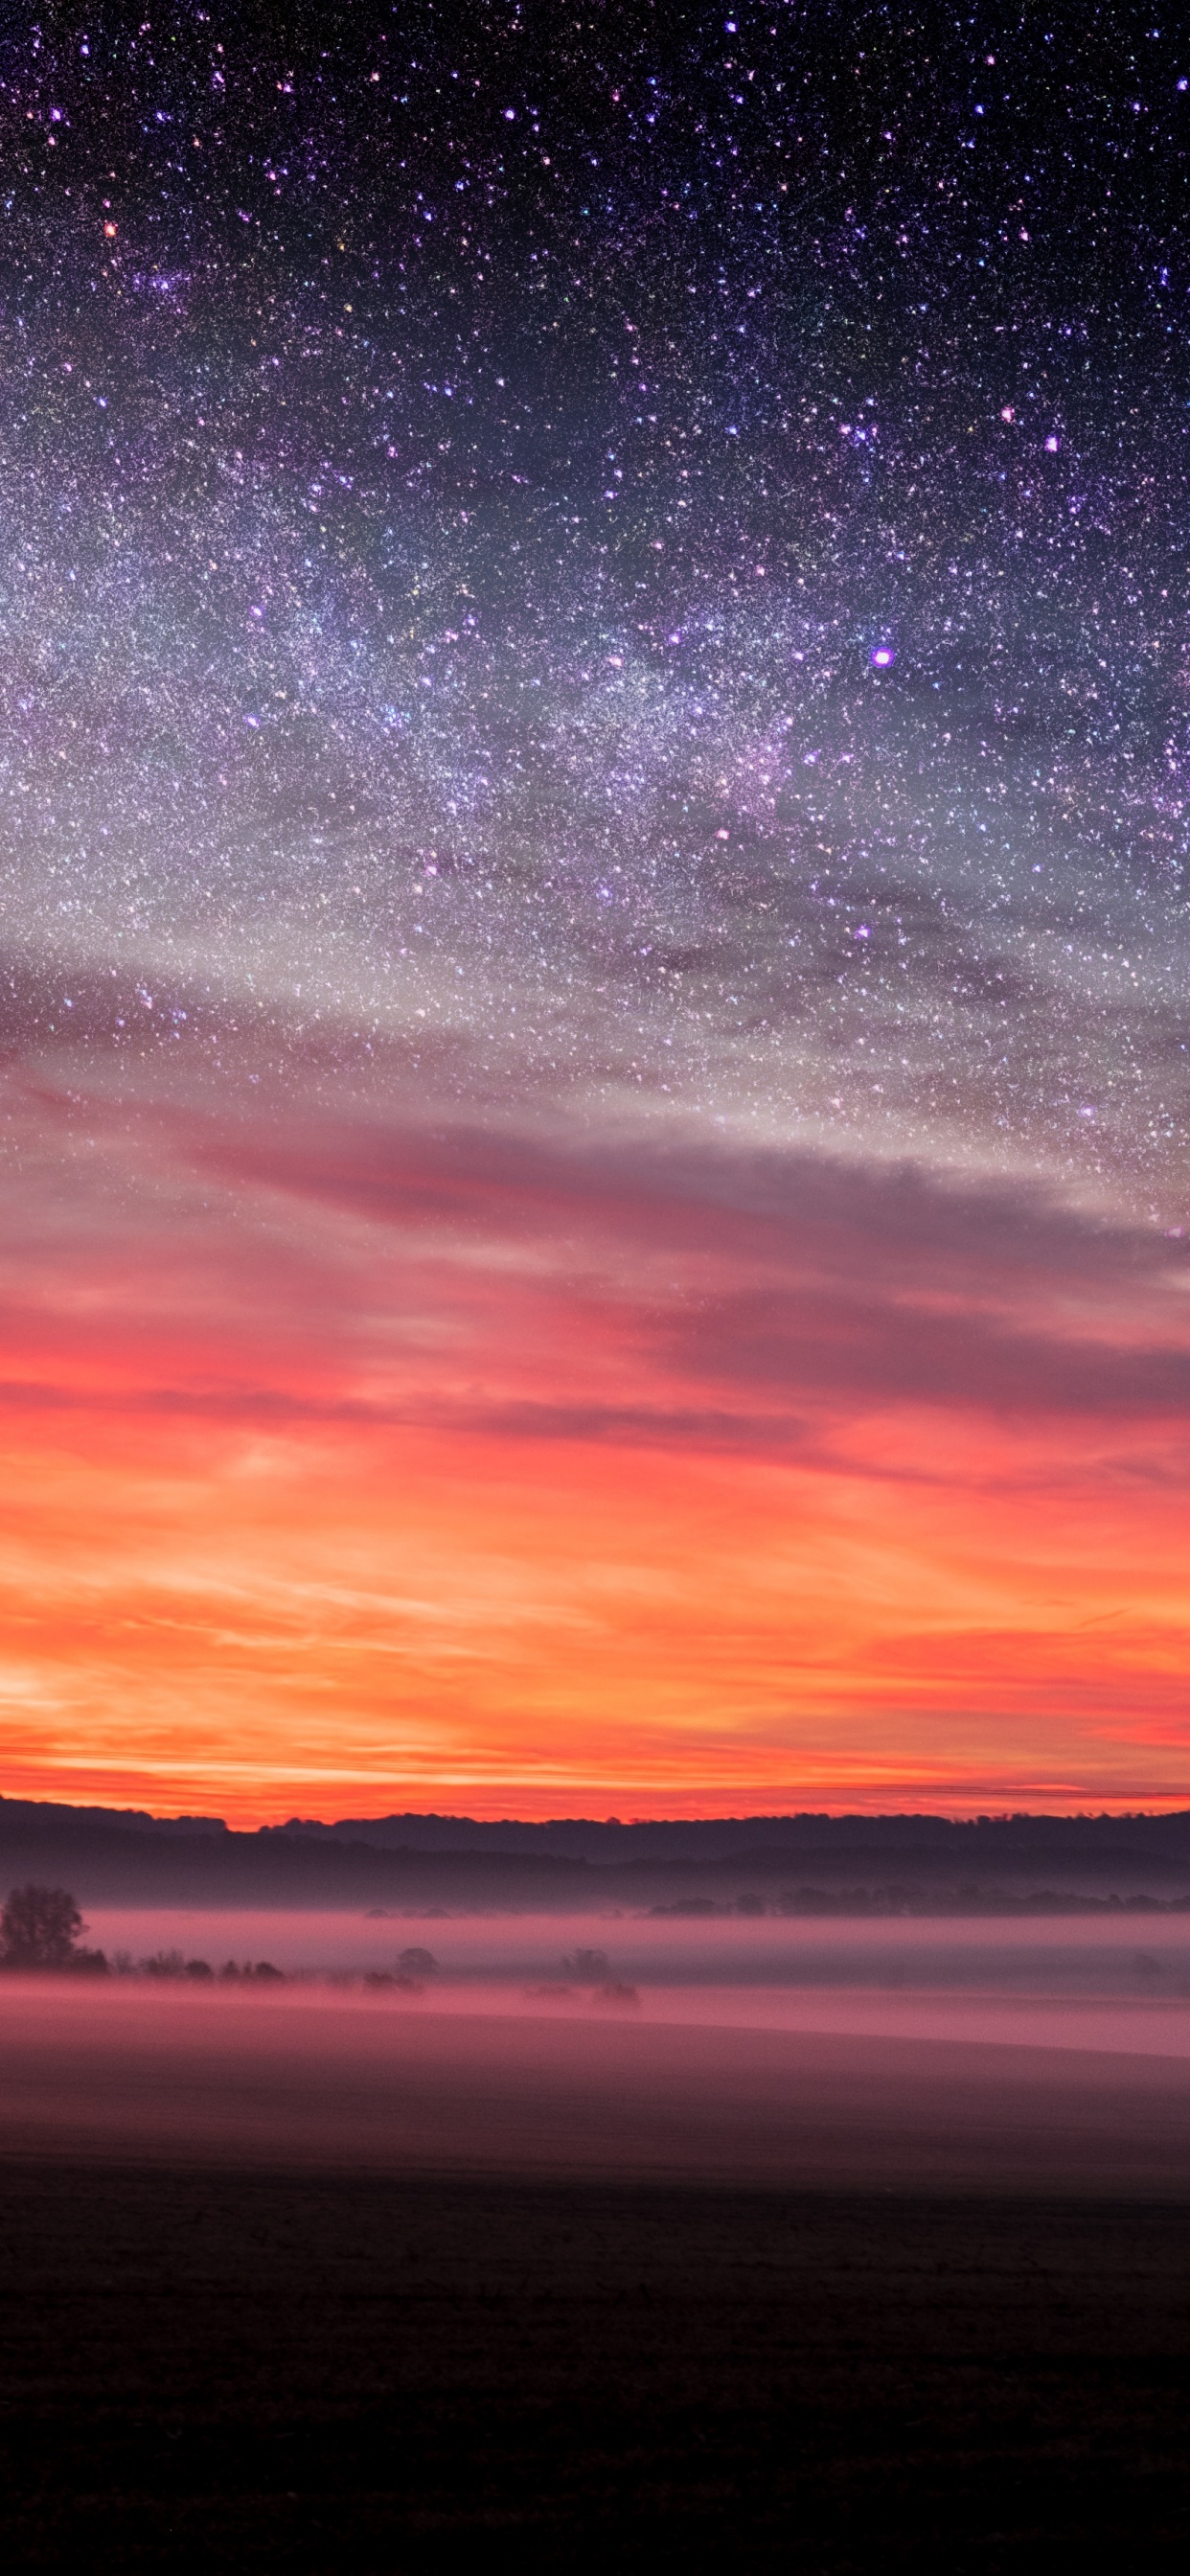 Đêm sao: Đêm sao là thời điểm tuyệt vời để ngắm nhìn vẻ đẹp đầy mê hoặc của các thiên thể trên bầu trời. Hãy cùng khám phá những hình ảnh tuyệt đẹp về đêm sao để trải nghiệm cảm giác thăng hoa tột độ.